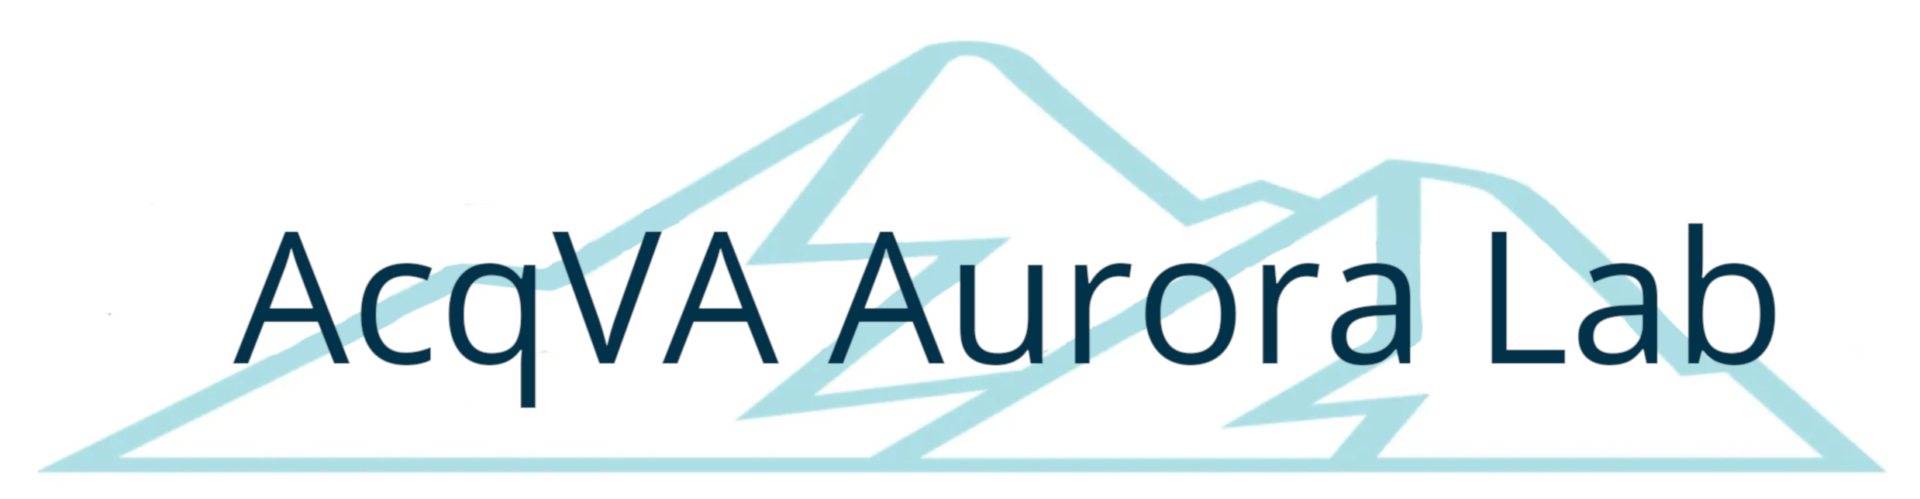 AcqVA Aurora Lab